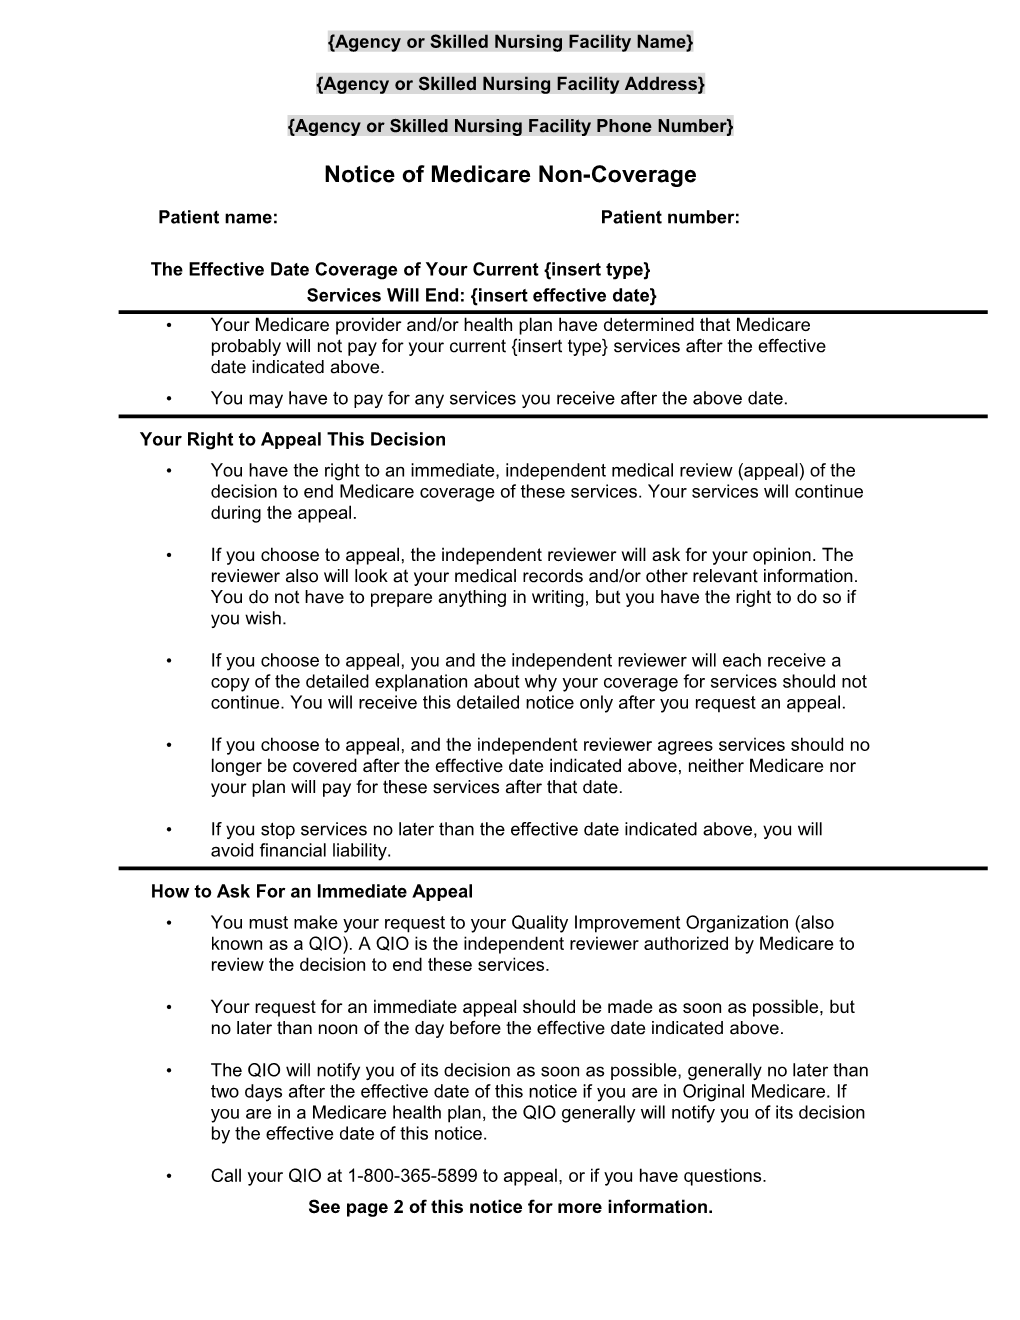 BCN Advantage Notice of Medicare Noncoverage